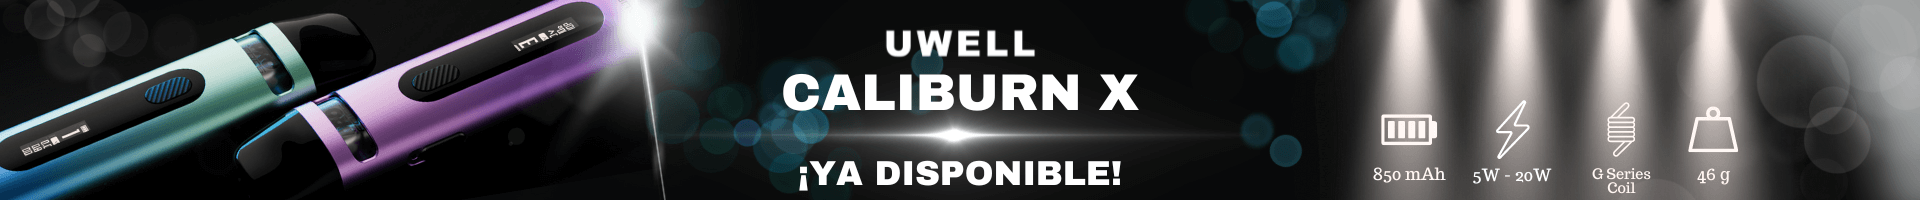 Uwell Caliburn X Banner